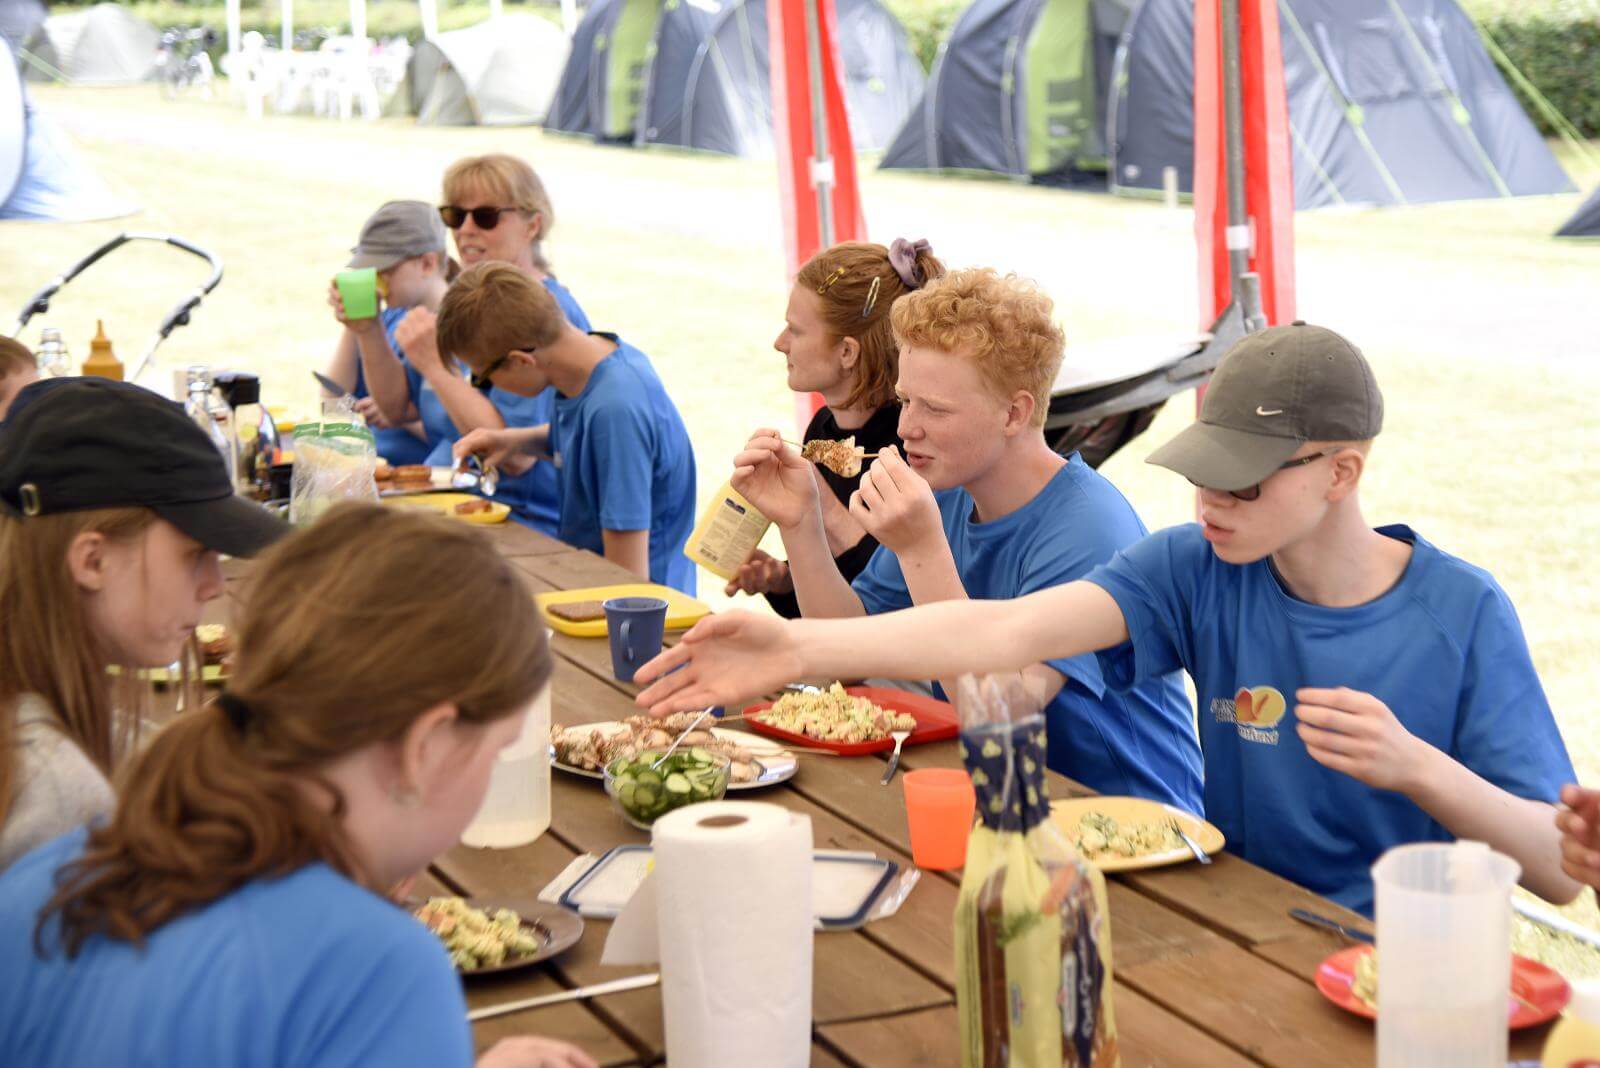 Et hold af eleverne sidder under en pavillon og spiser frokost